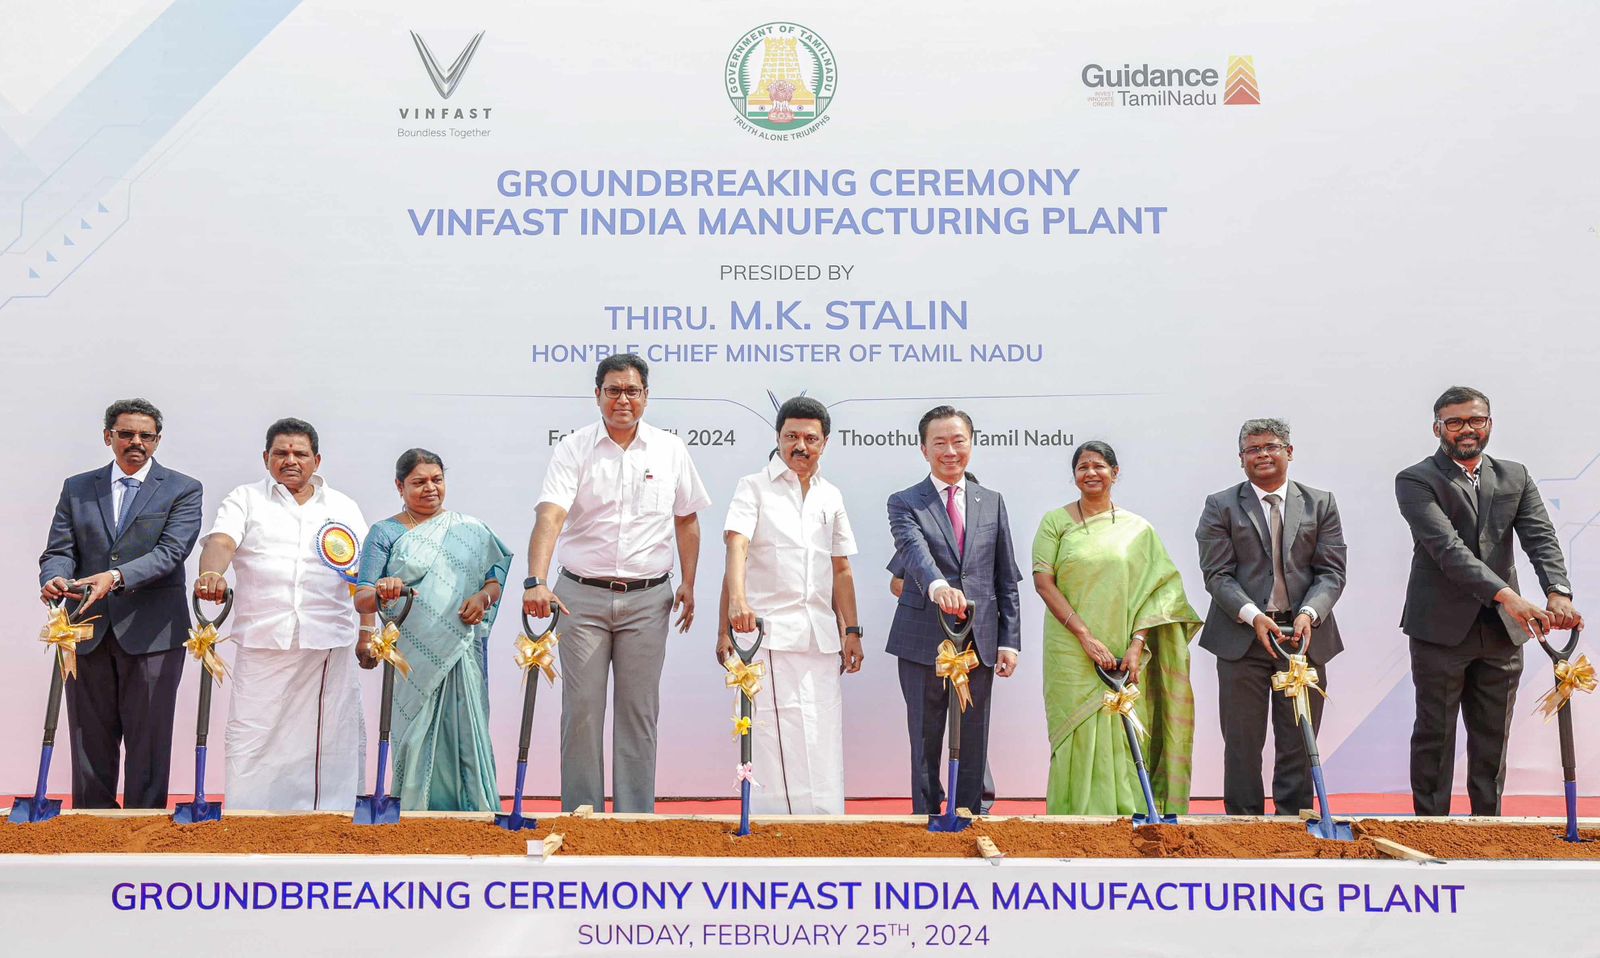 Groundbreaking Ceremony VinFast India